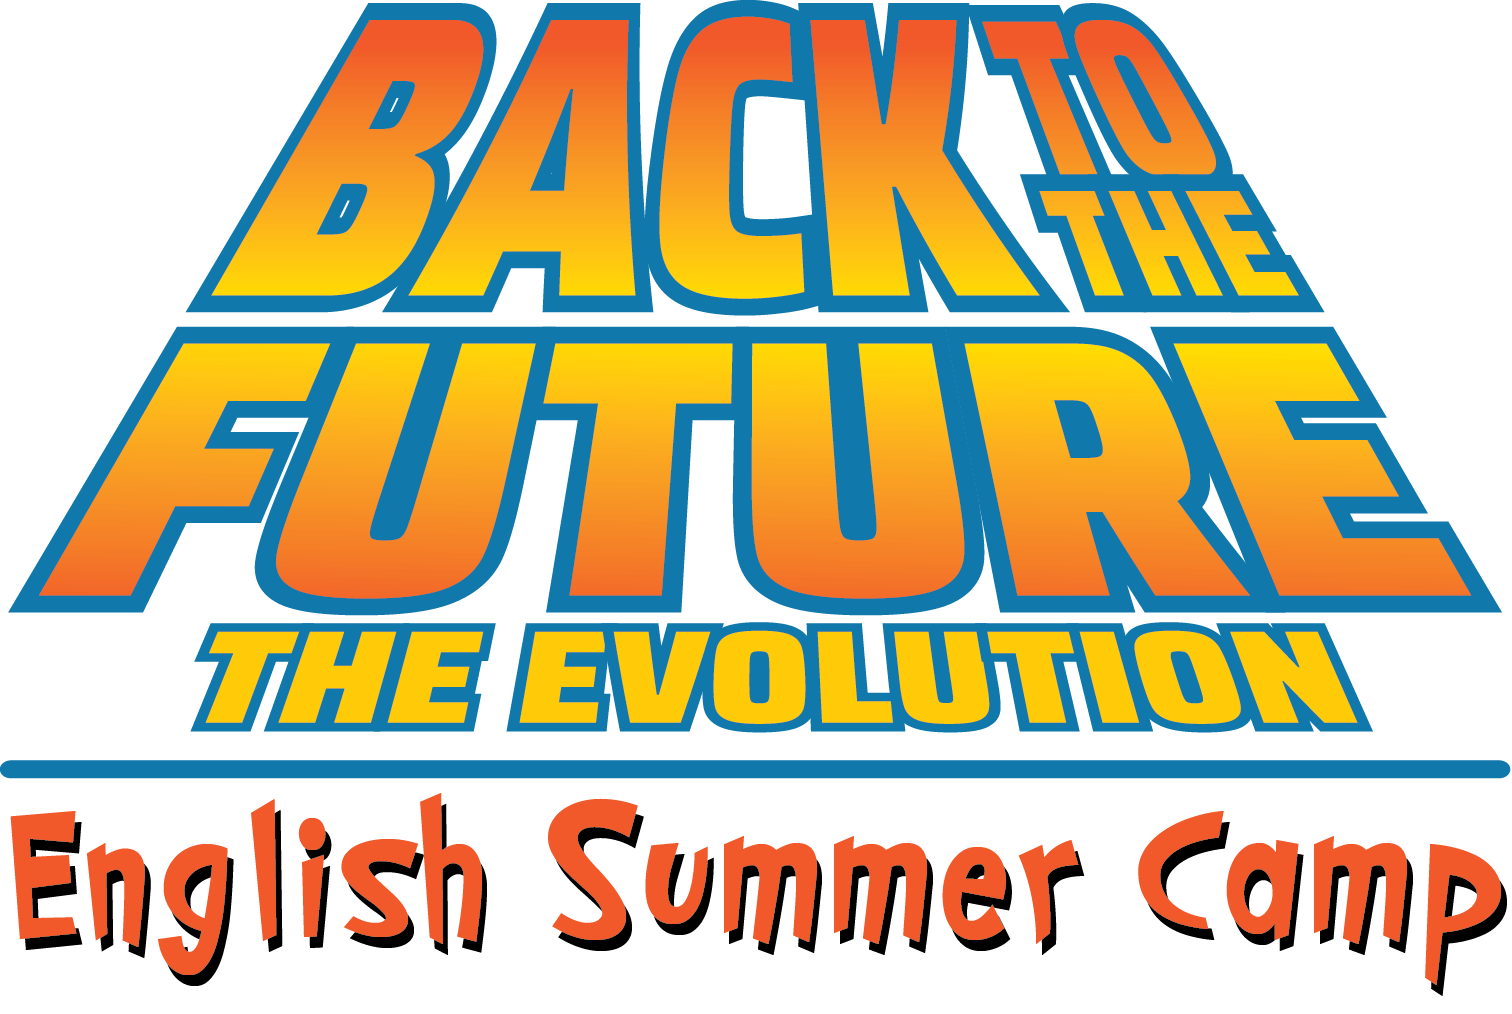 Στο English Summer Camp σας ταξιδεύουμε Back to the Future!